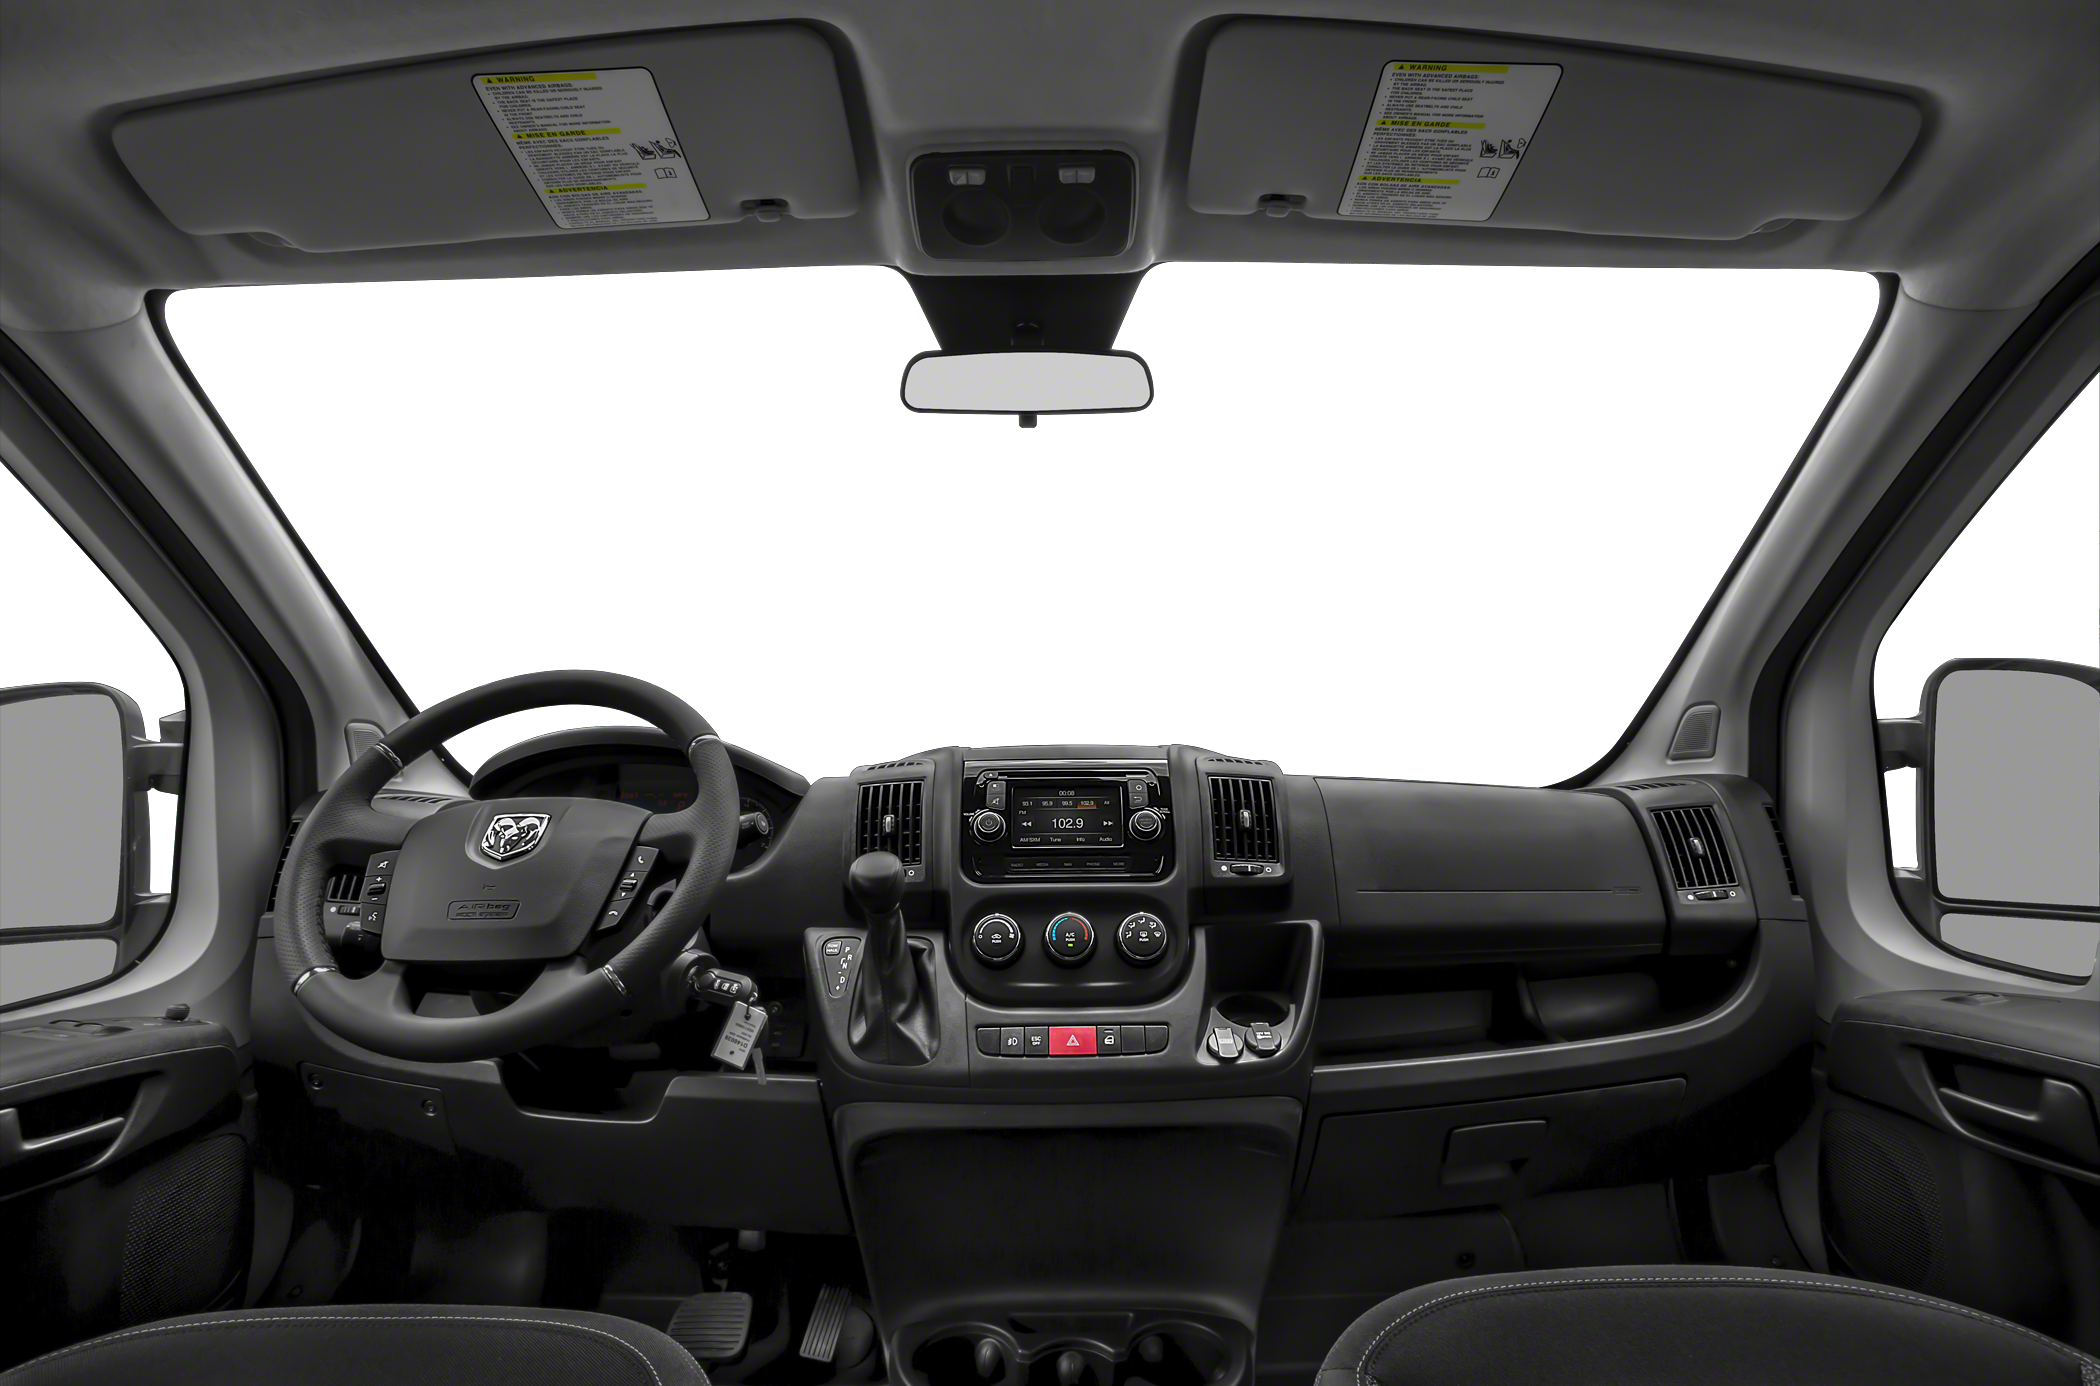 2019 RAM ProMaster 3500 Window Van